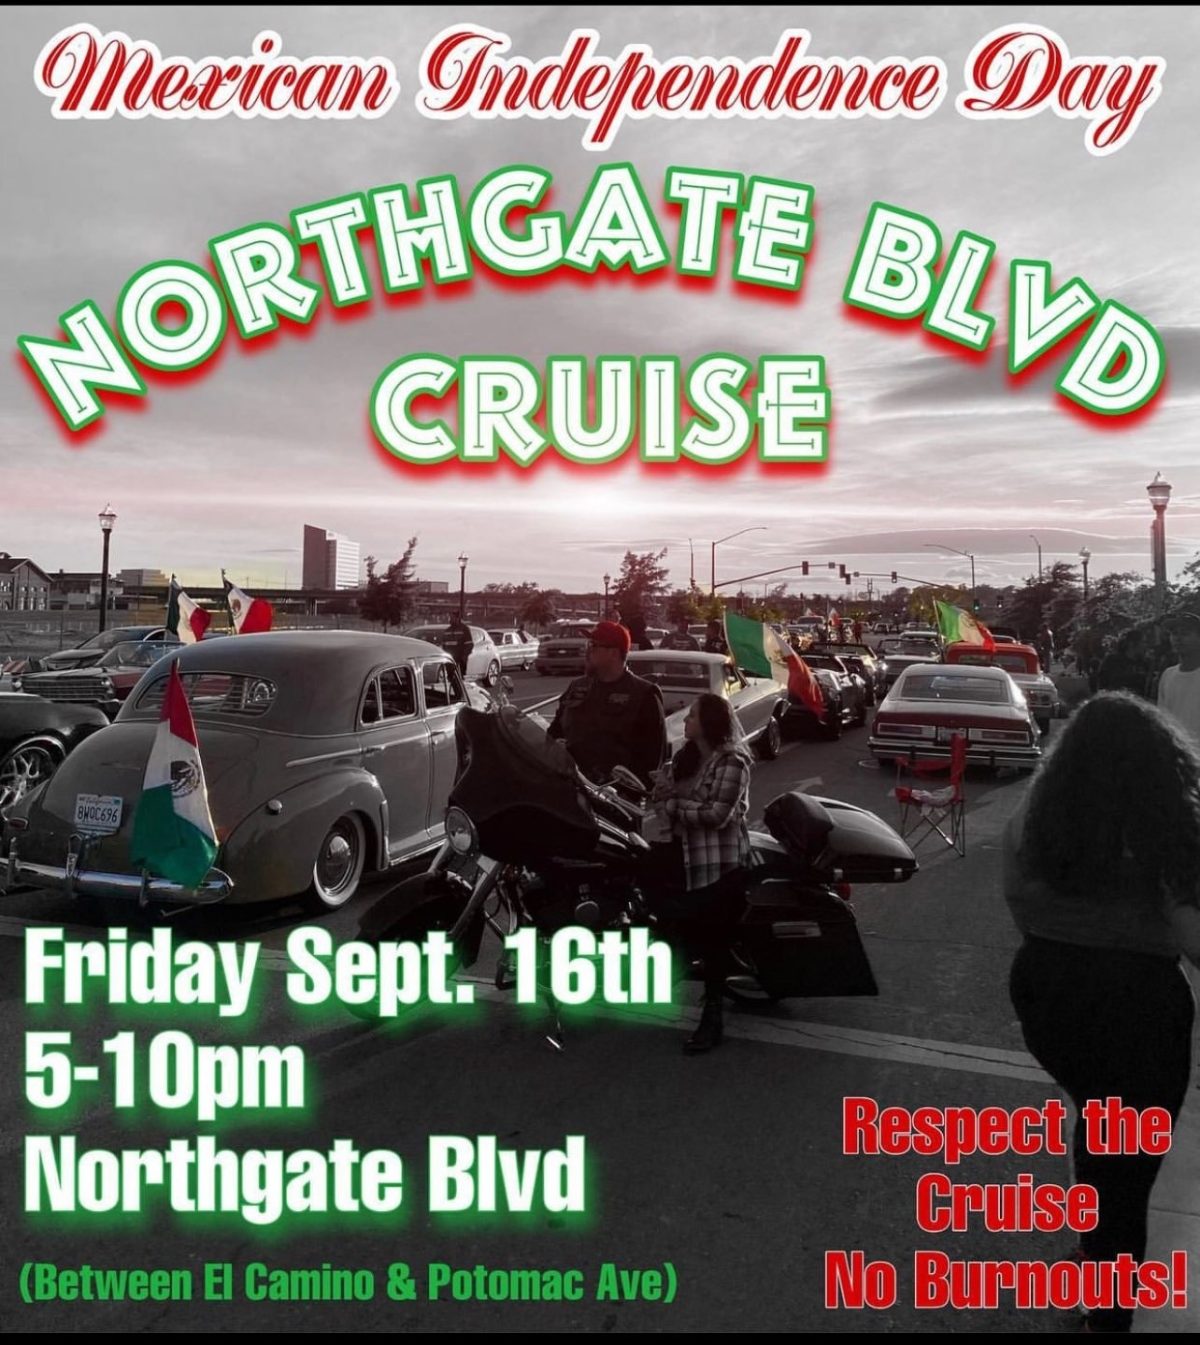 Northgate Boulevard Cruise